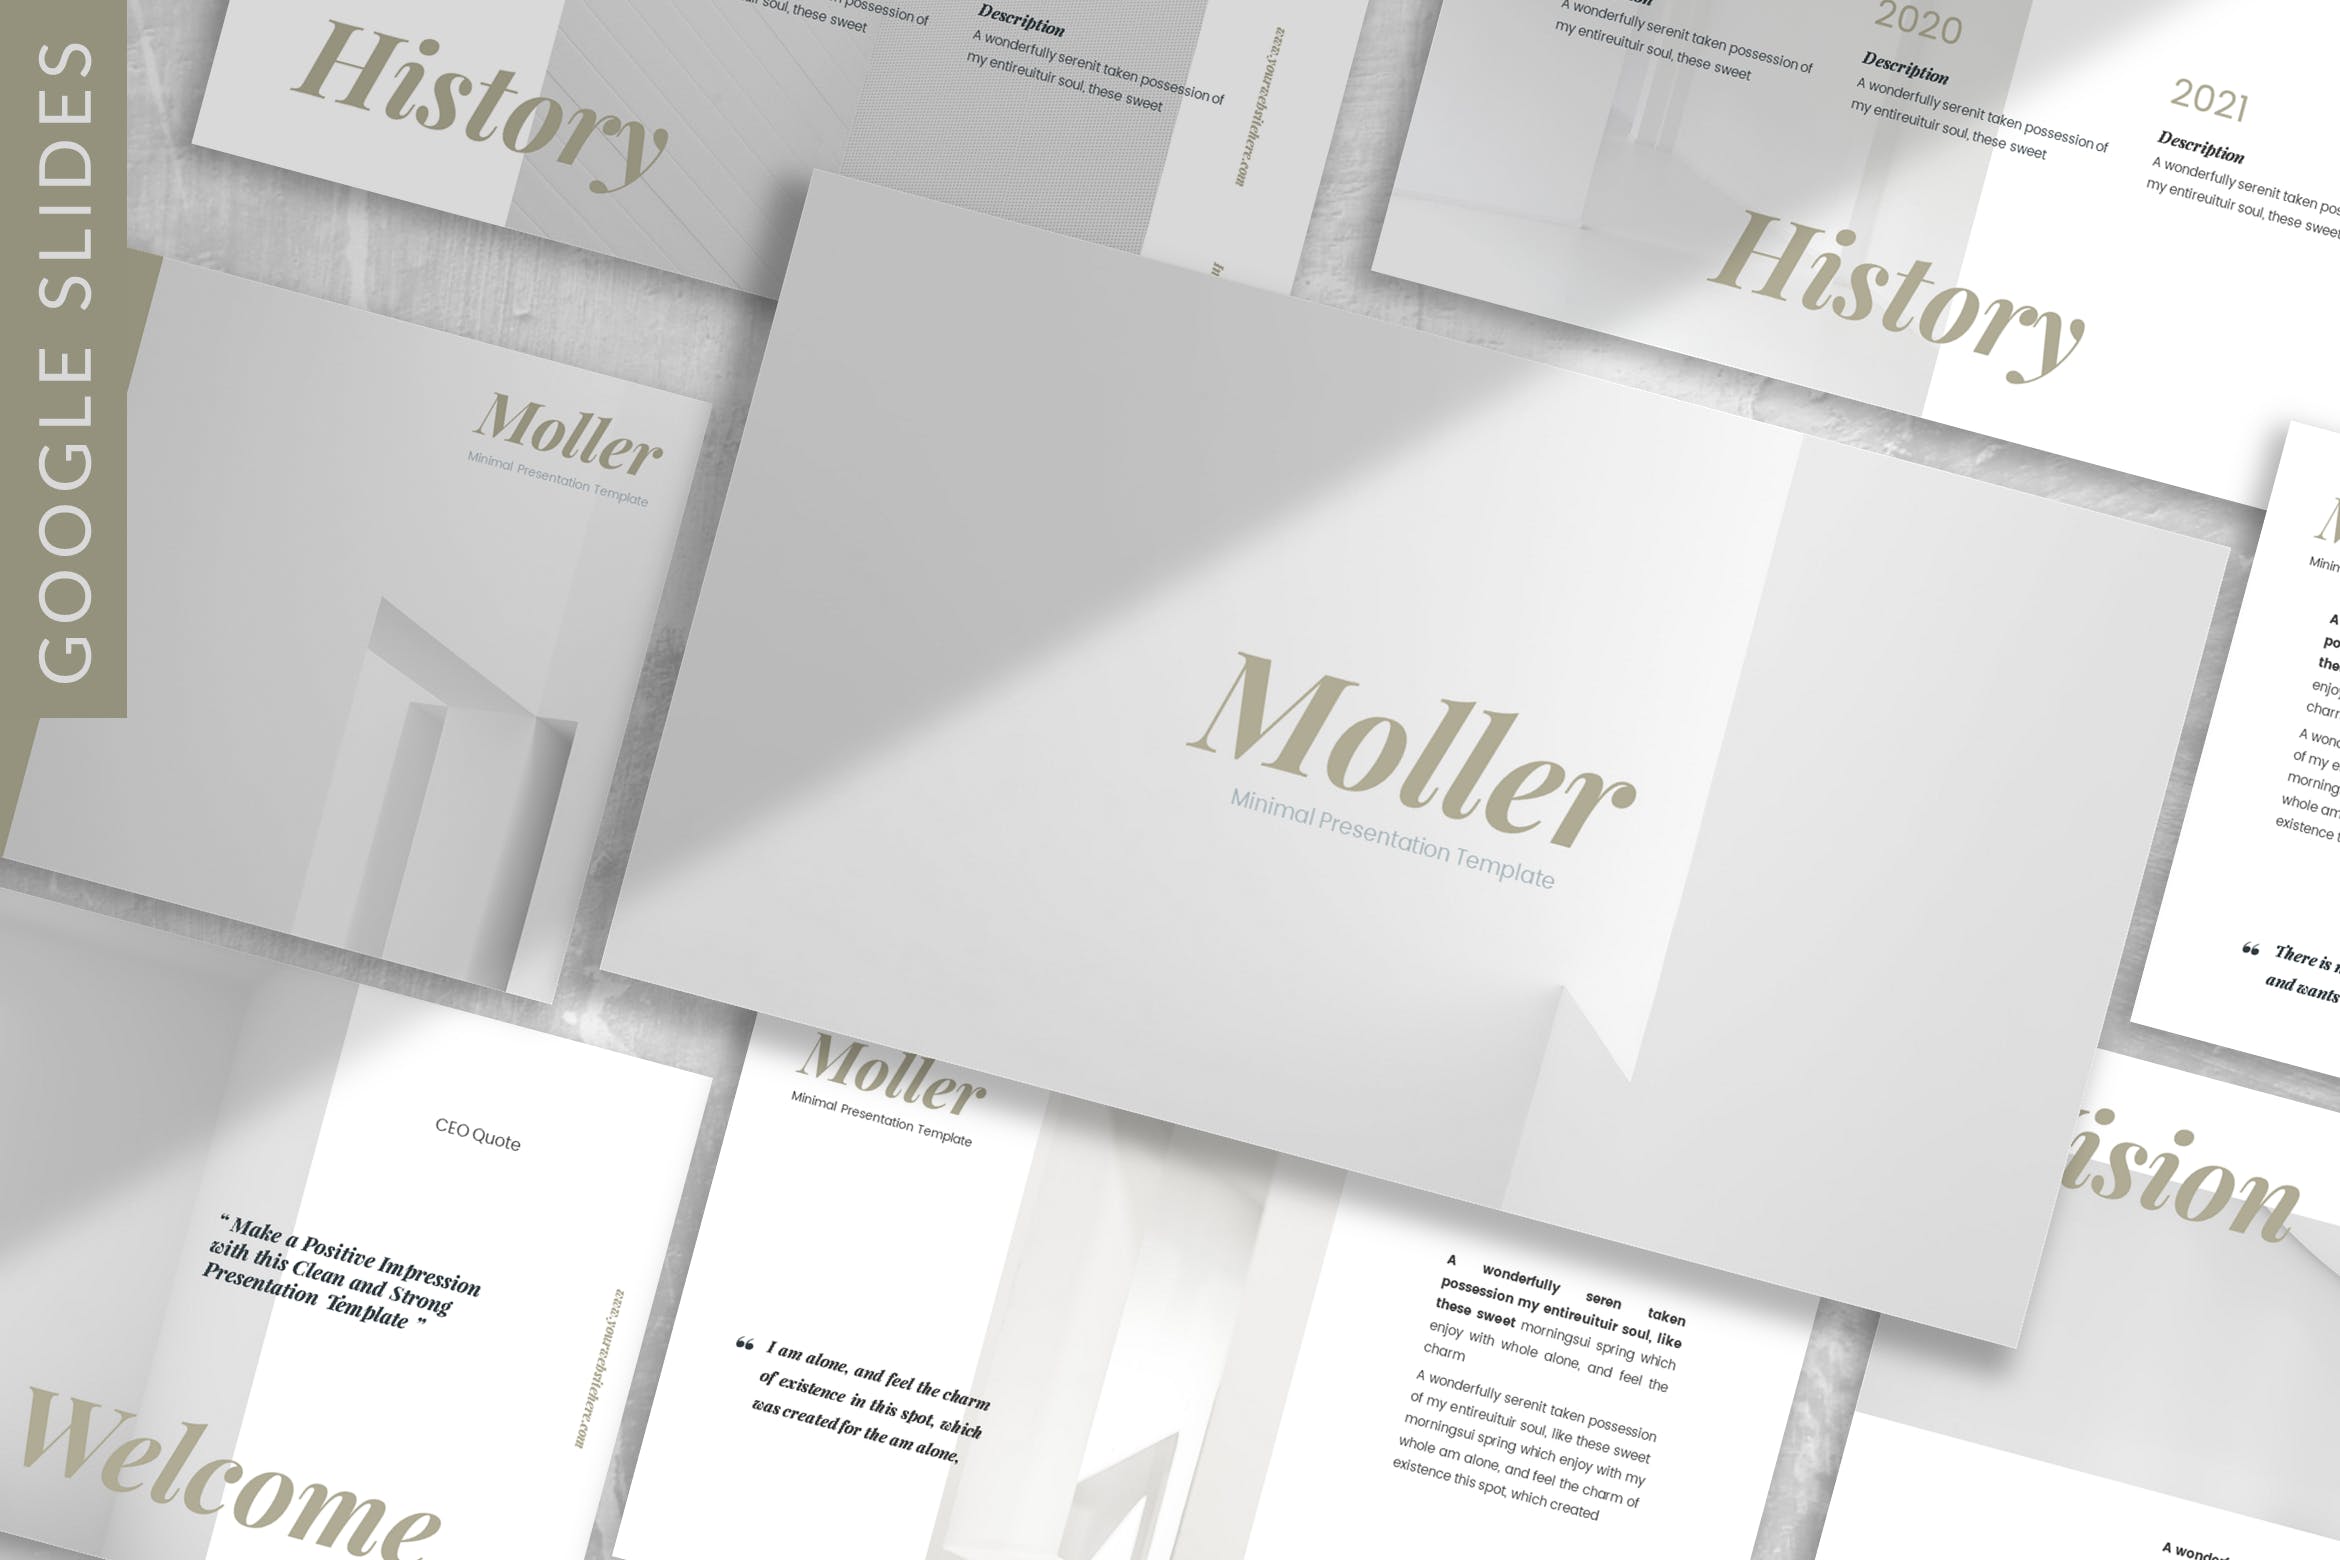 极简Lookbook设计风格16素材精选谷歌演示模板 Moller – Lookbook Google Slide Template插图